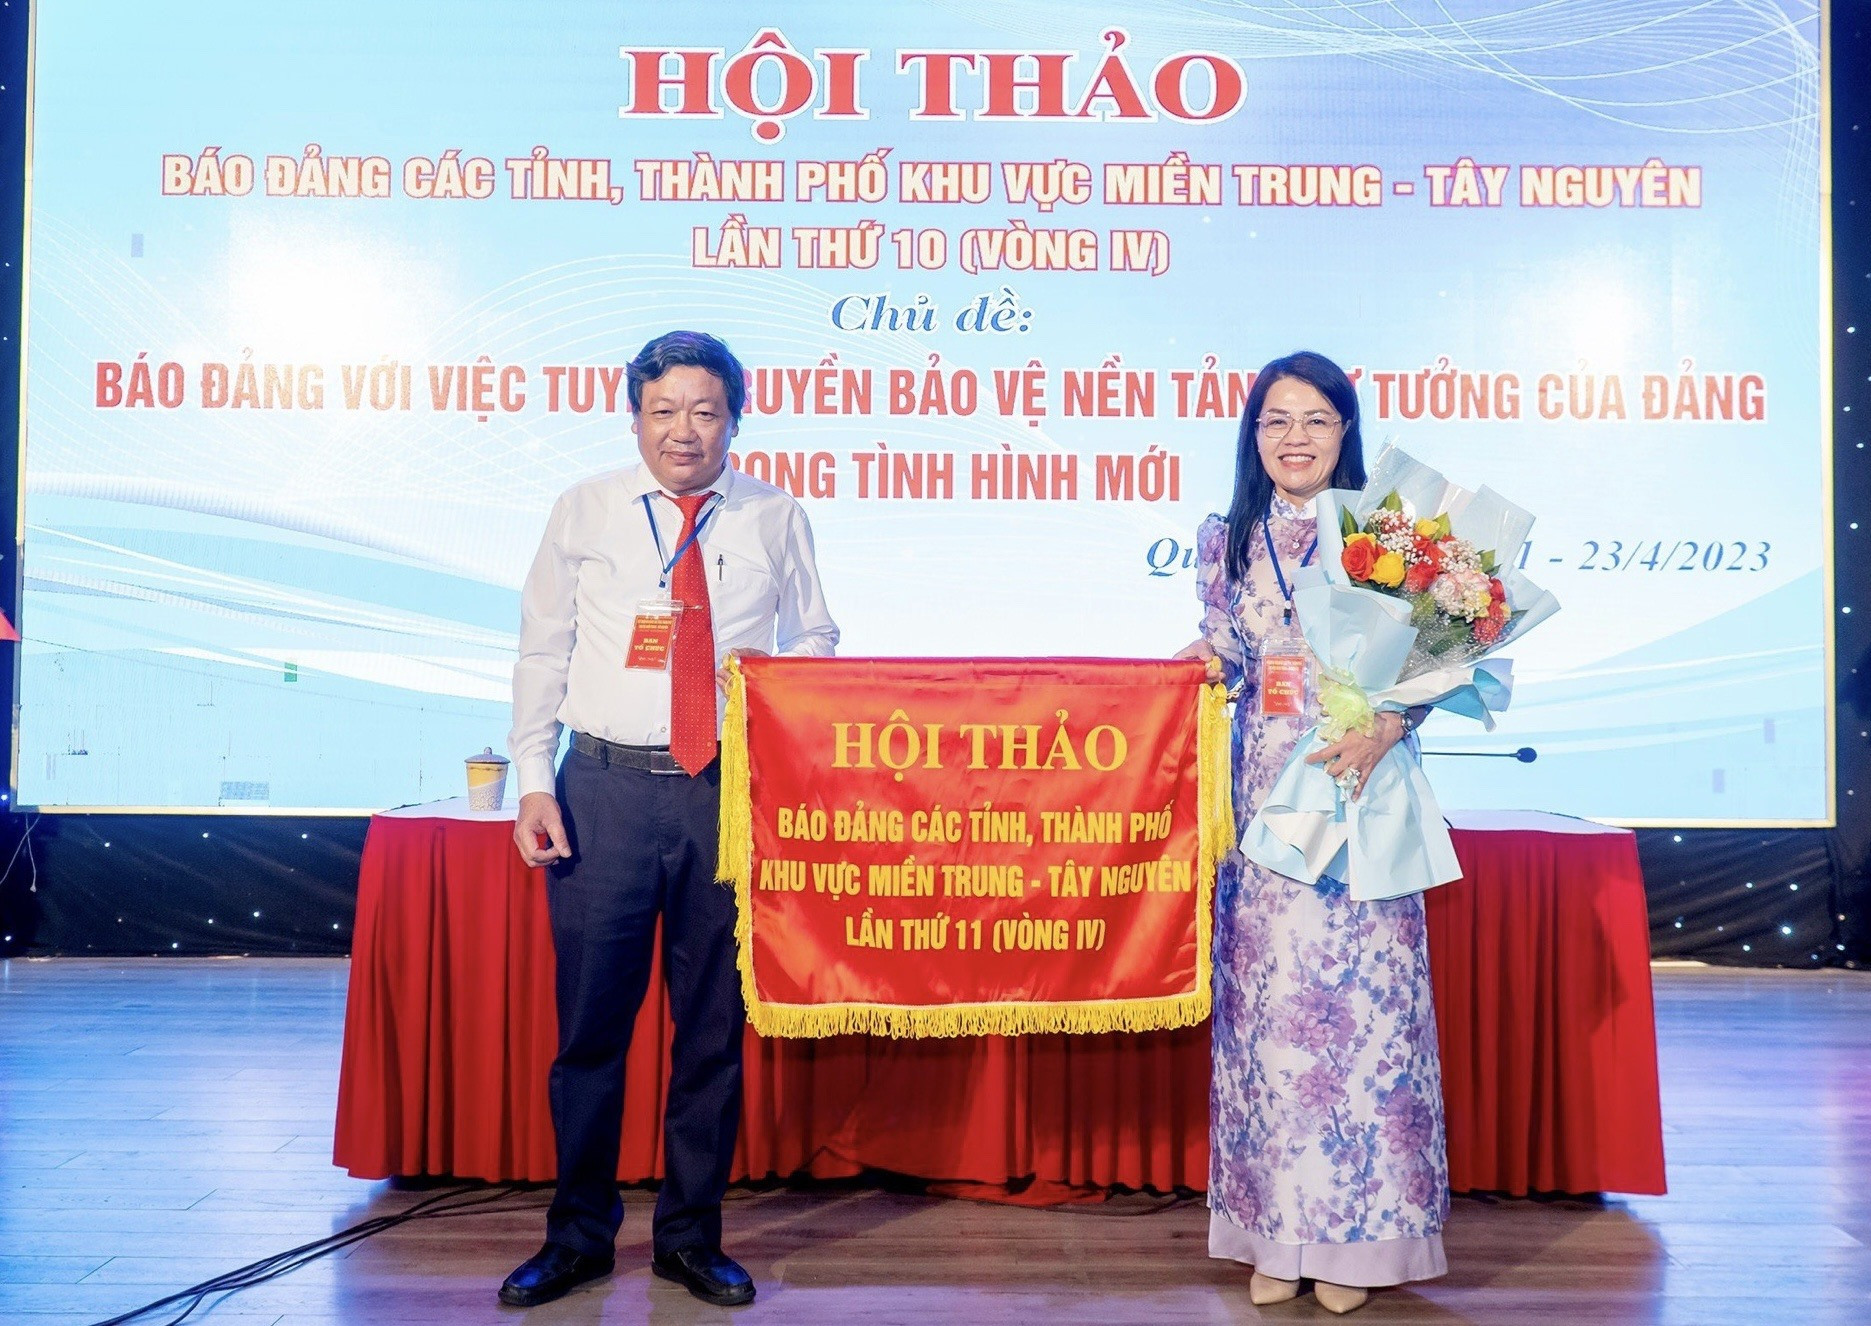 Nhà báo Trương Đức Minh Tứ - Tổng Biên tập Báo Quảng Trị trao cờ đăng cai hội thảo lần sau cho đại diện Báo Lâm Đồng. Ảnh: X.A